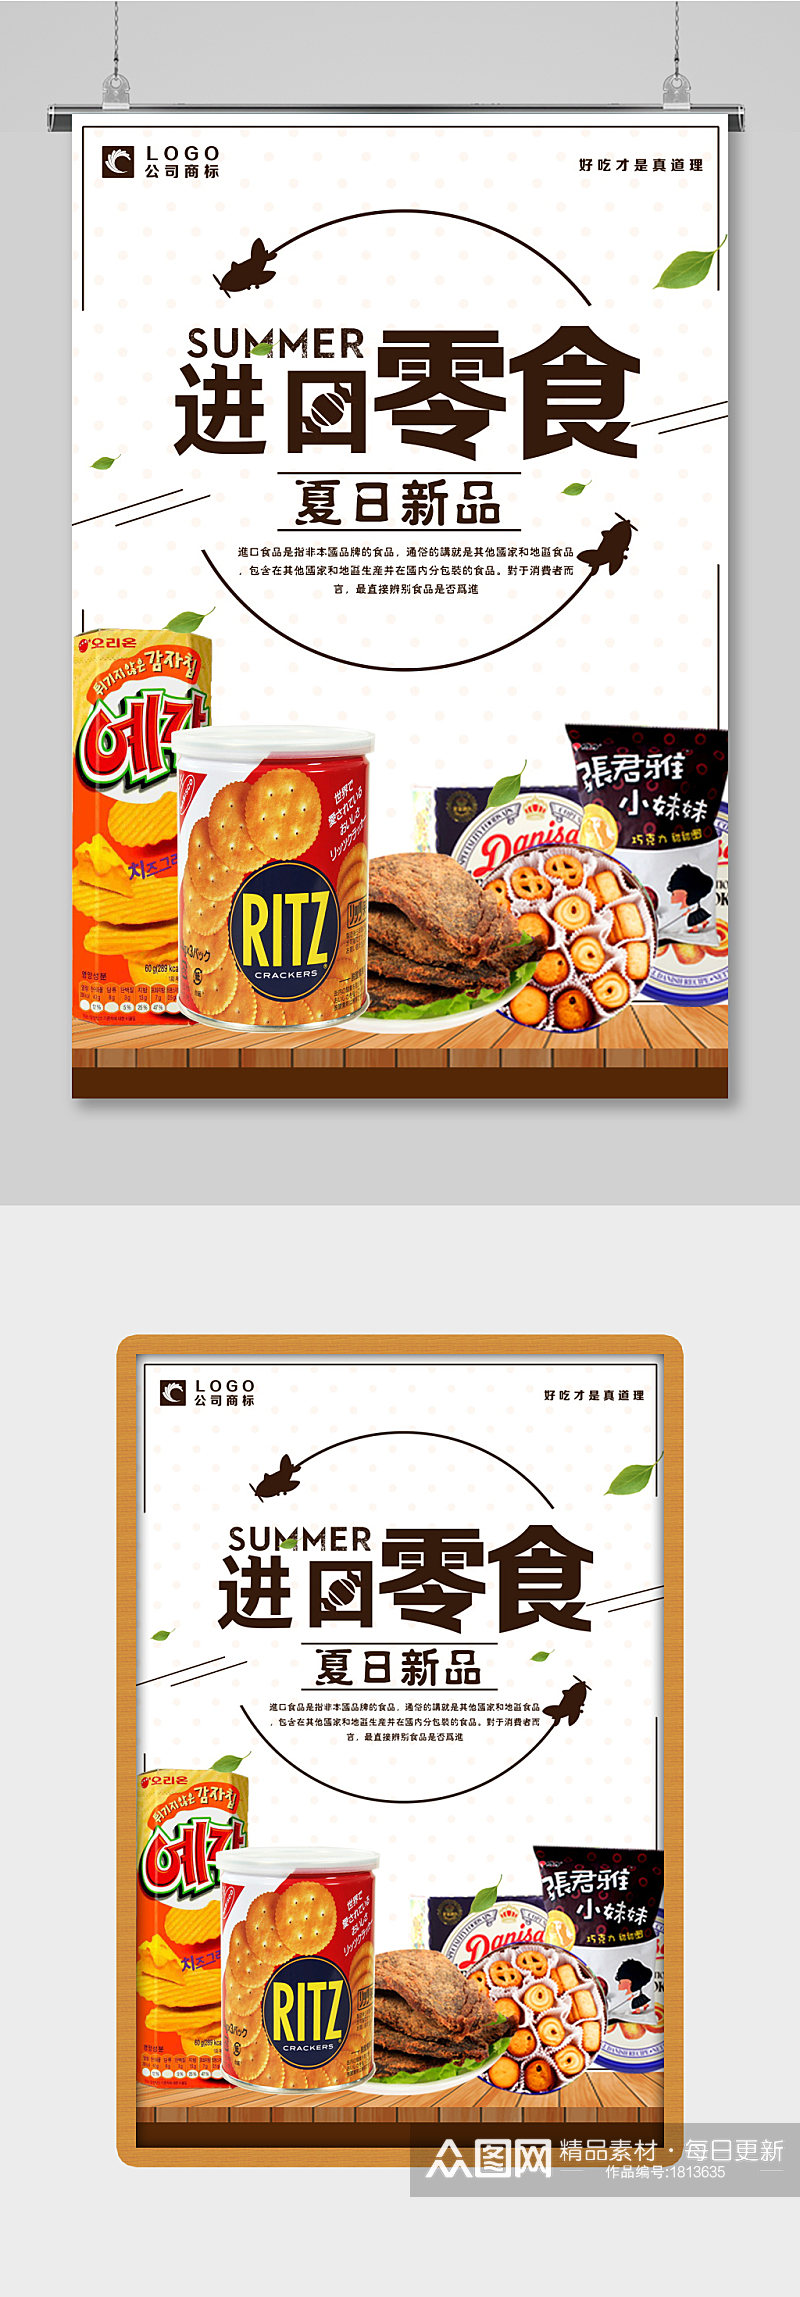 进口食品代购零食海报设计素材